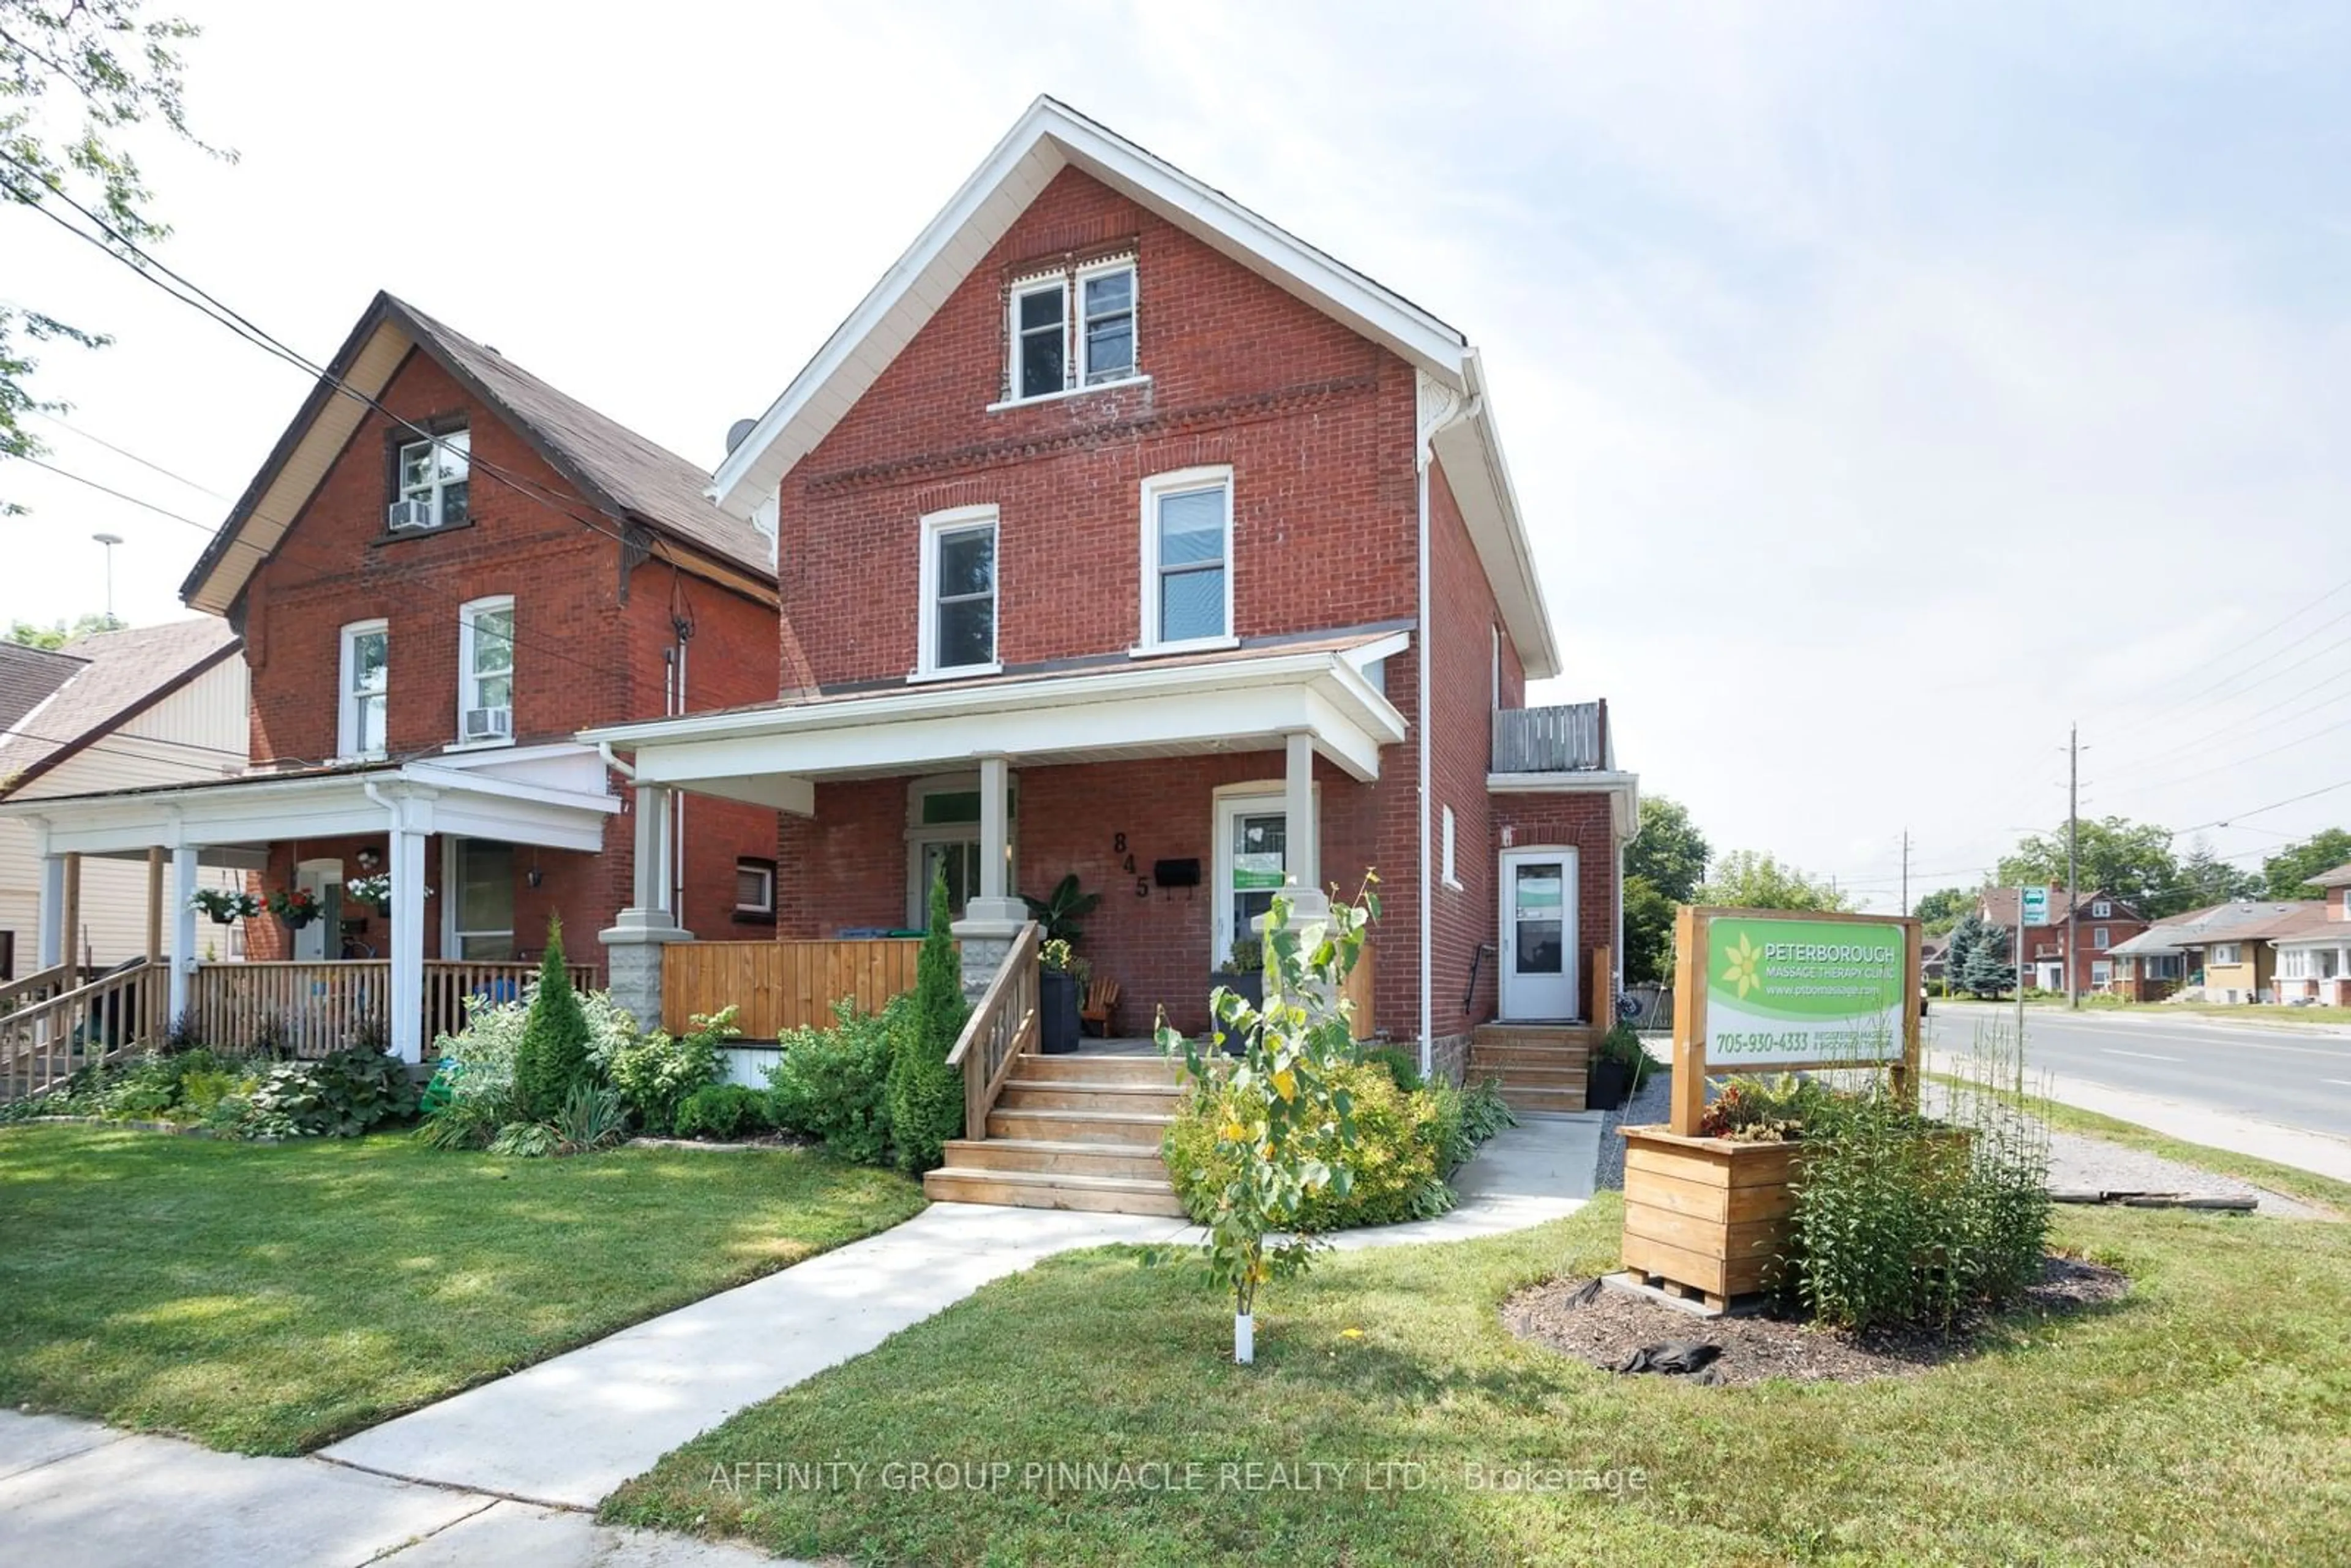 Home with brick exterior material for 845 Sherburne St, Peterborough Ontario K9J 3B7